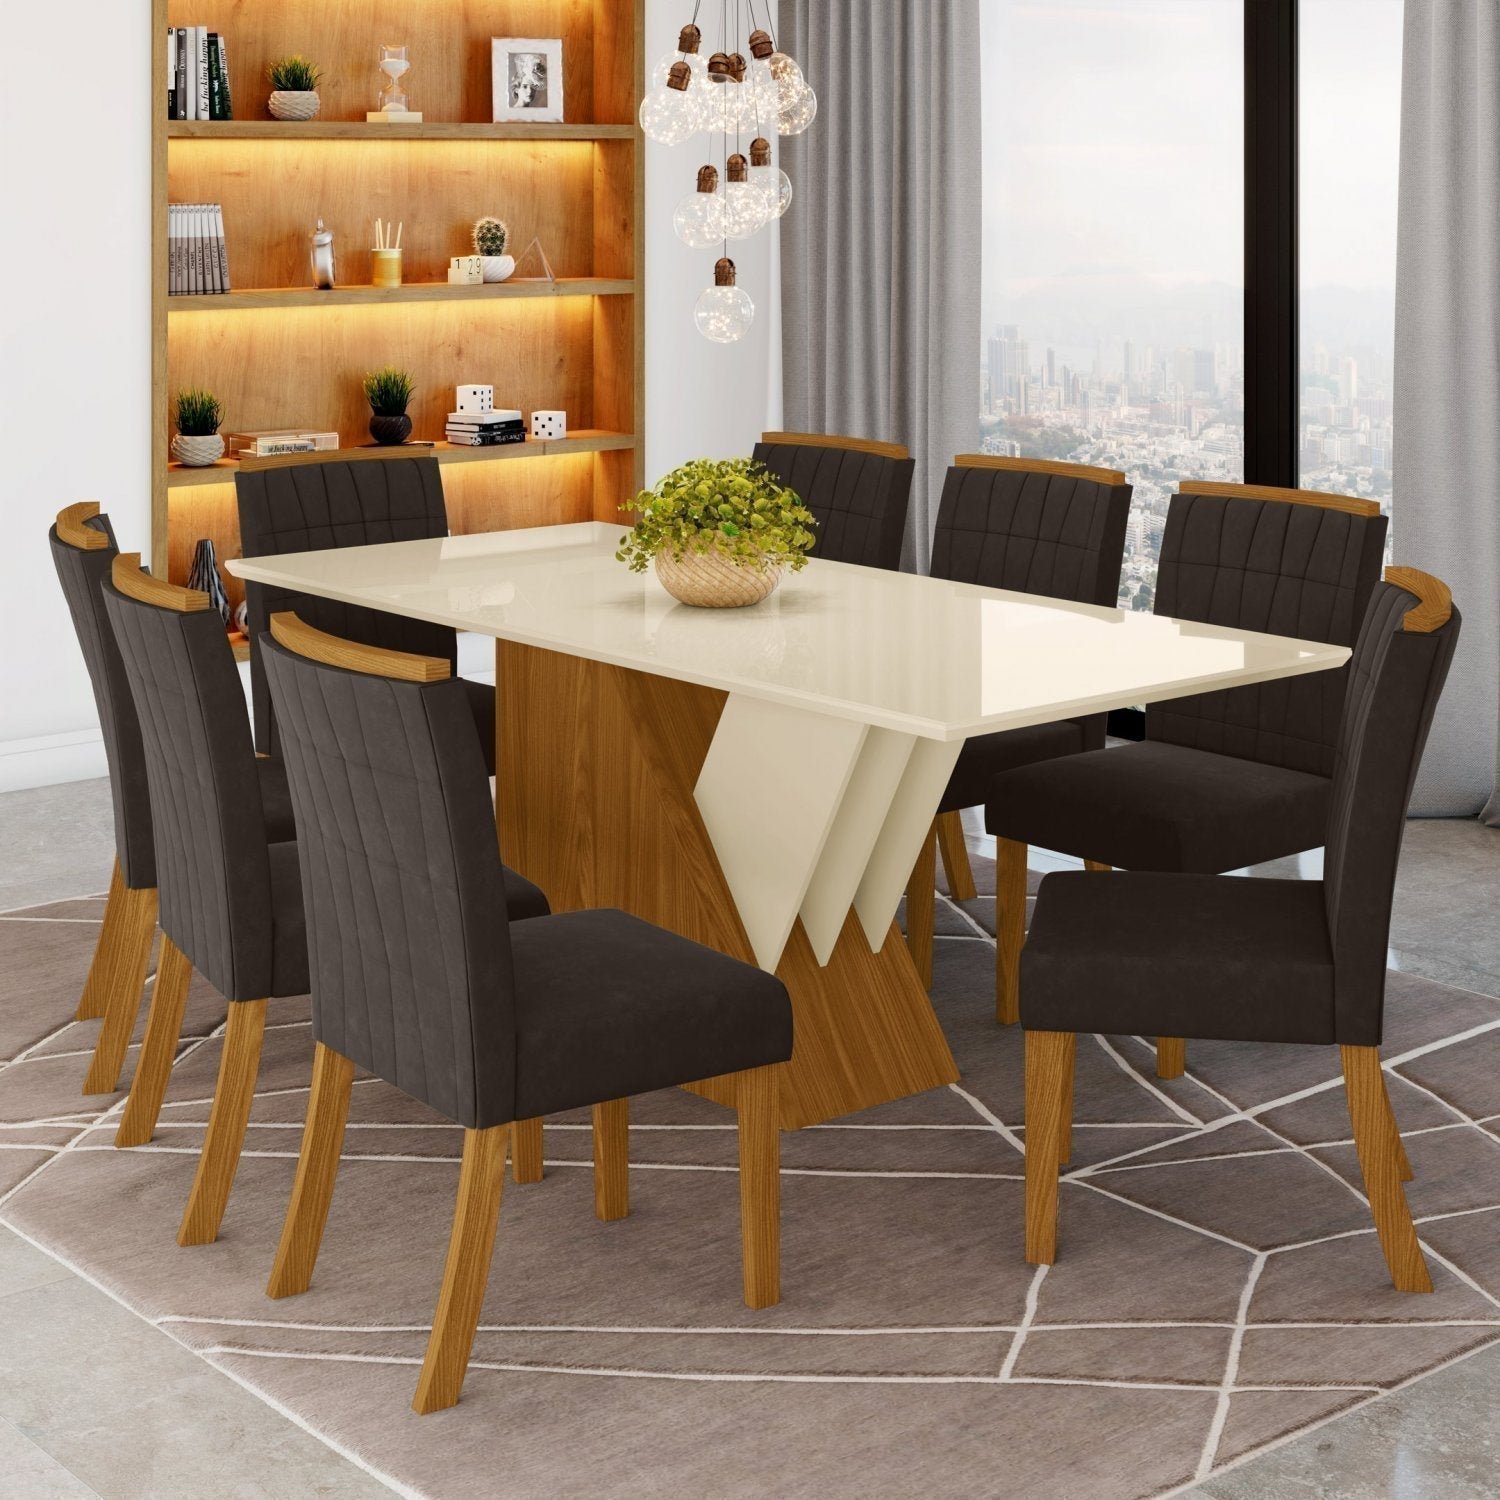 Conjunto Sala de Jantar Mesa Tampo MDF e Vidro 8 Cadeiras Itália Espresso Móveis - 1